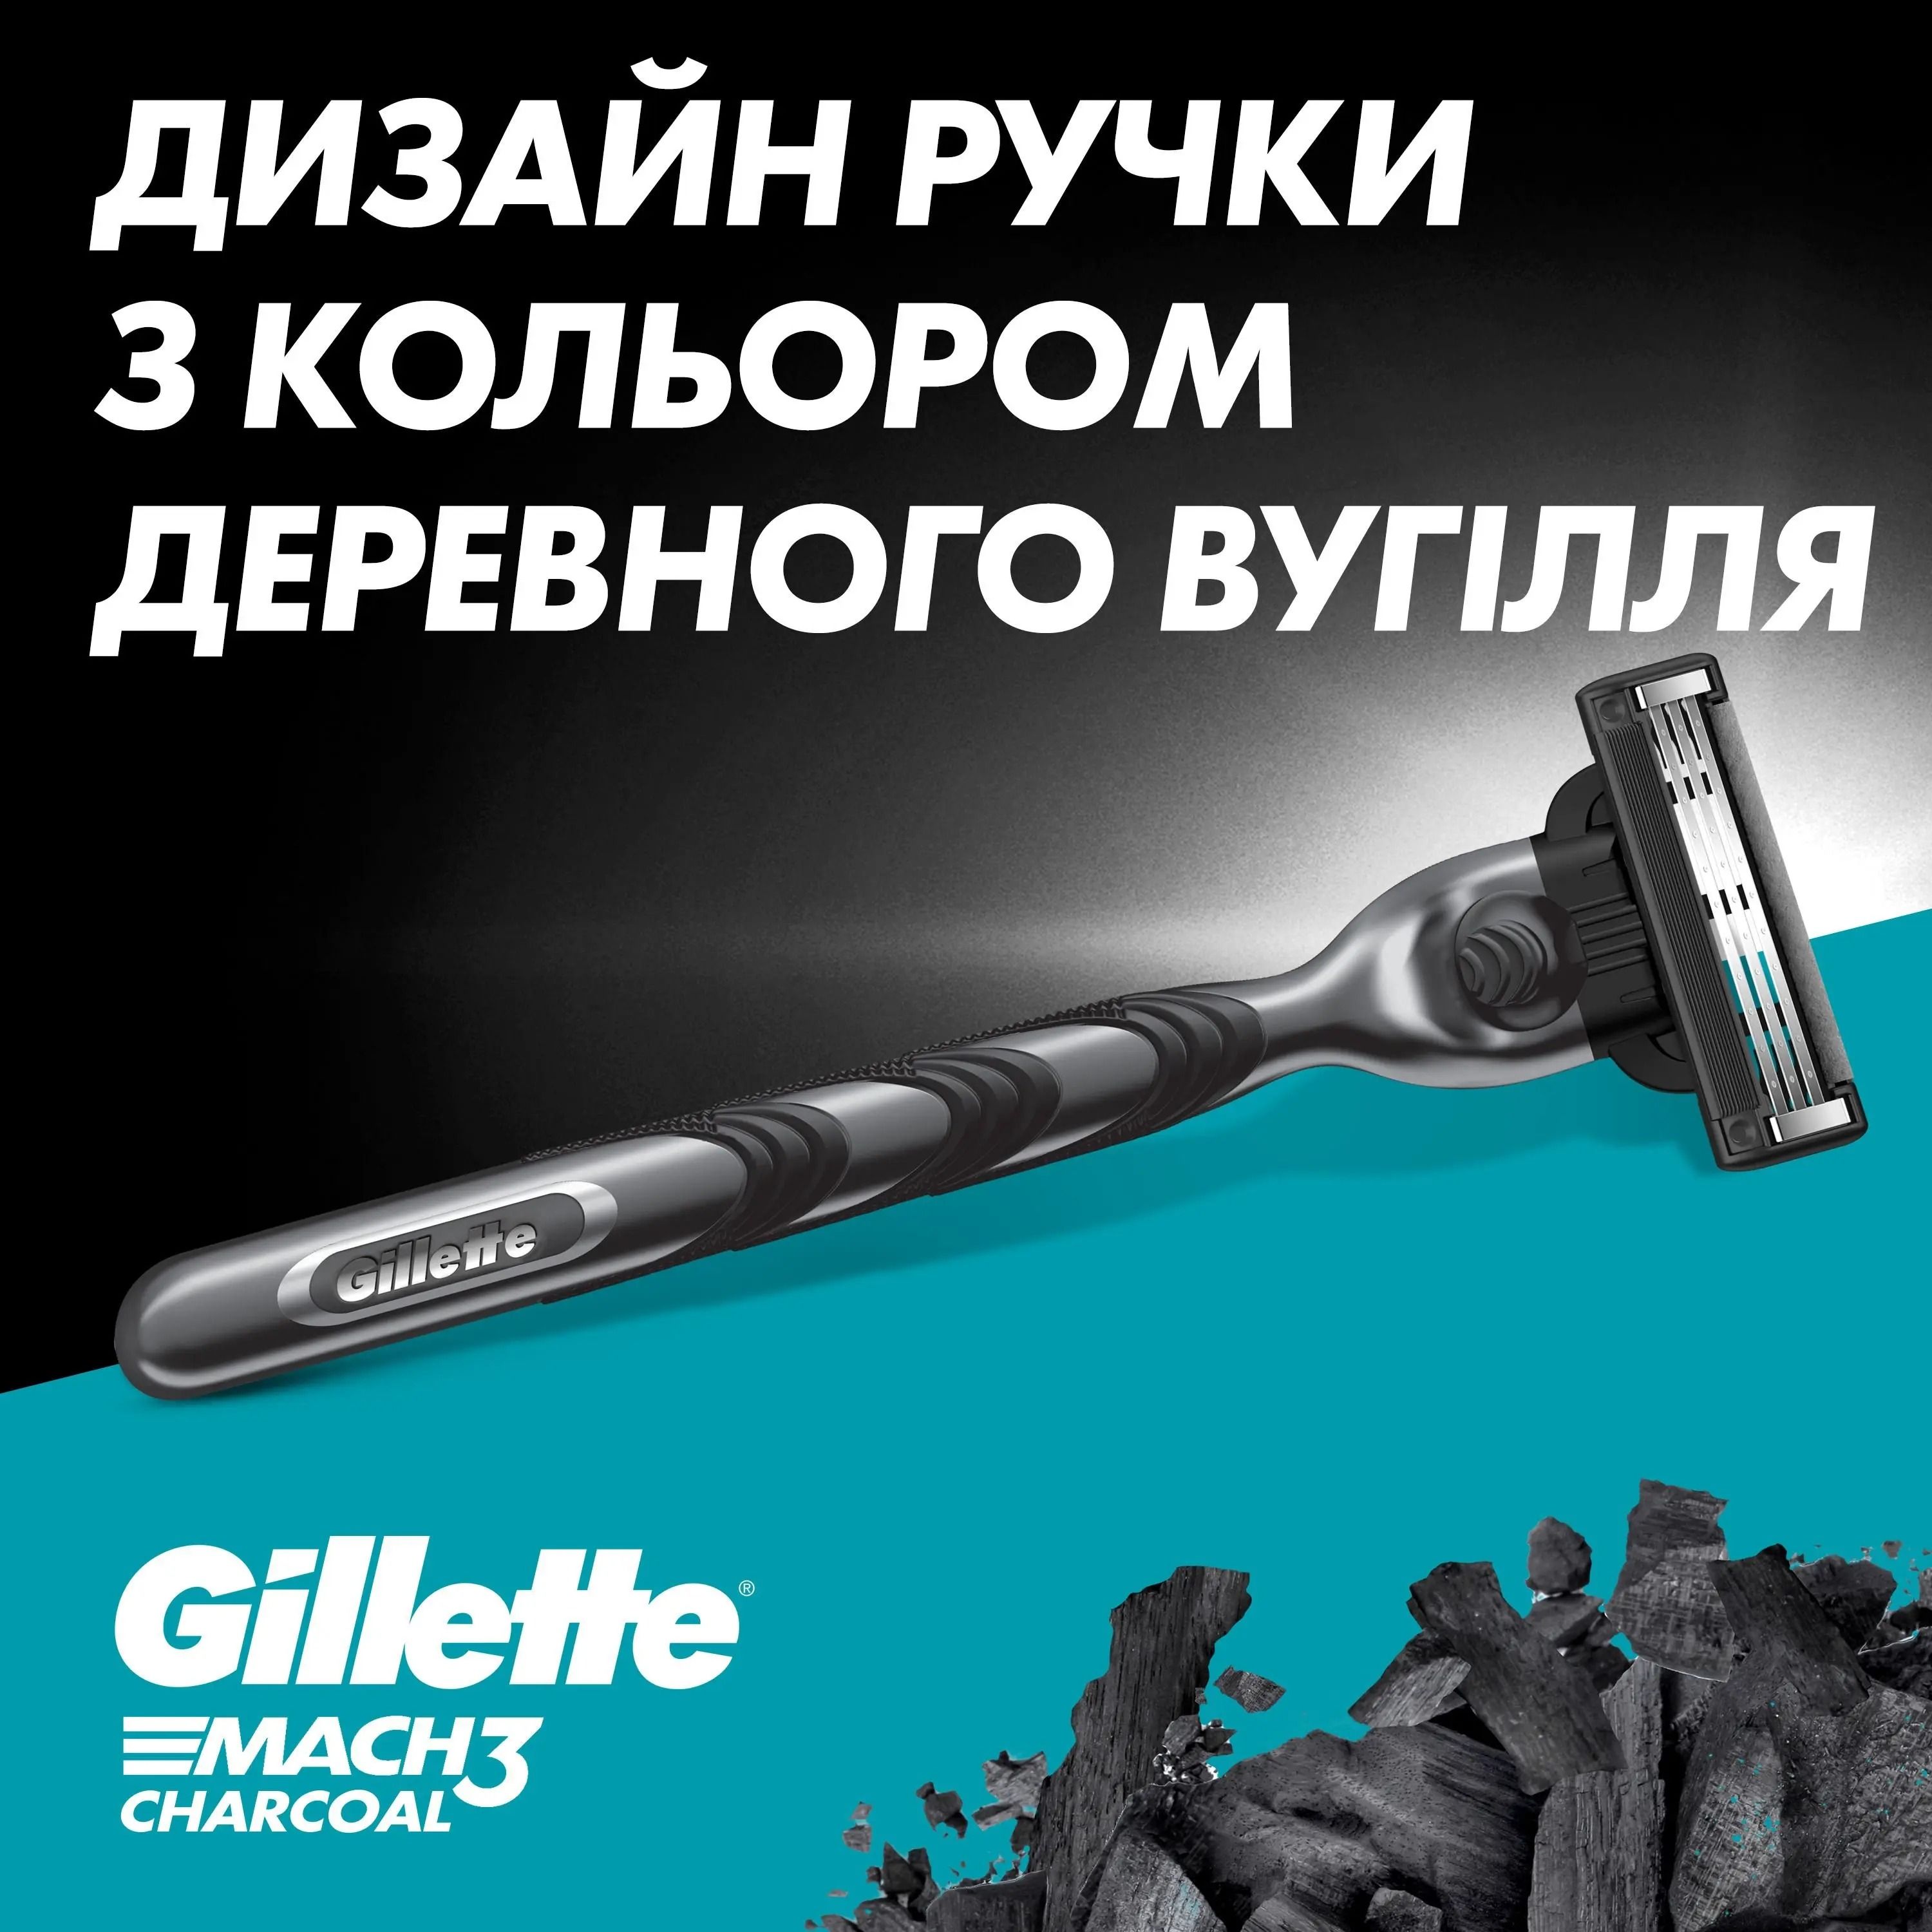 Сменные кассеты для бритья Gillette Mach 3 Charcoal 4 шт. - фото 6